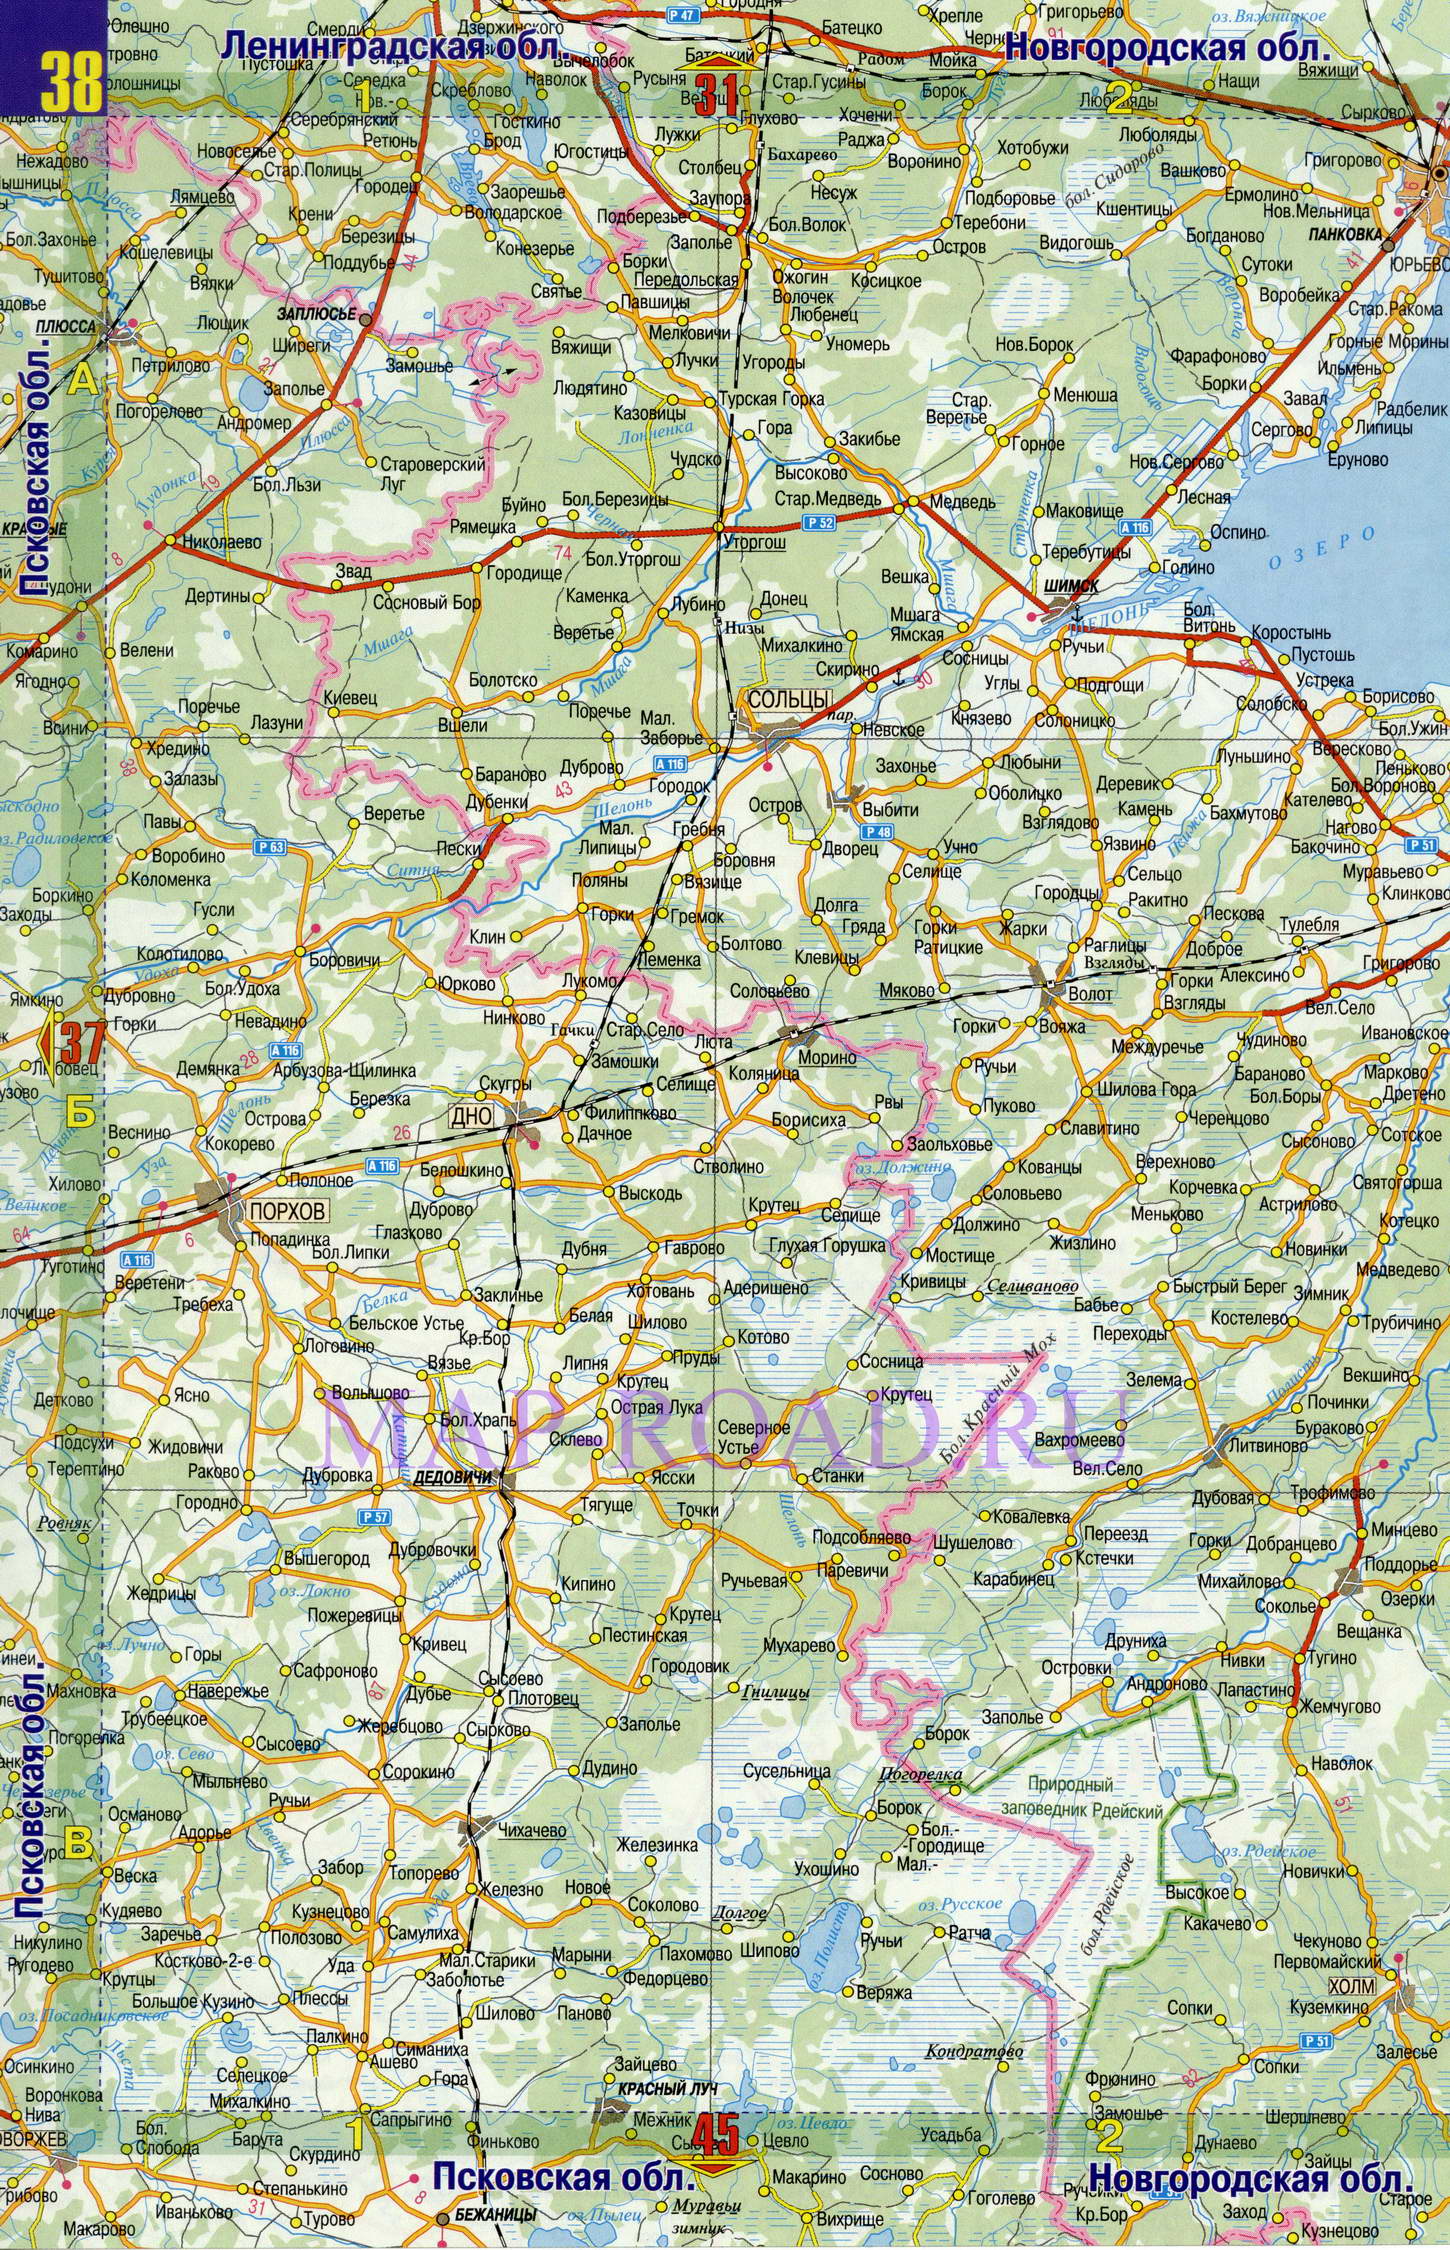 Подробная карта дорог Псковской области. Карта масштаба 1см:7км - Псковская область, B0 - 